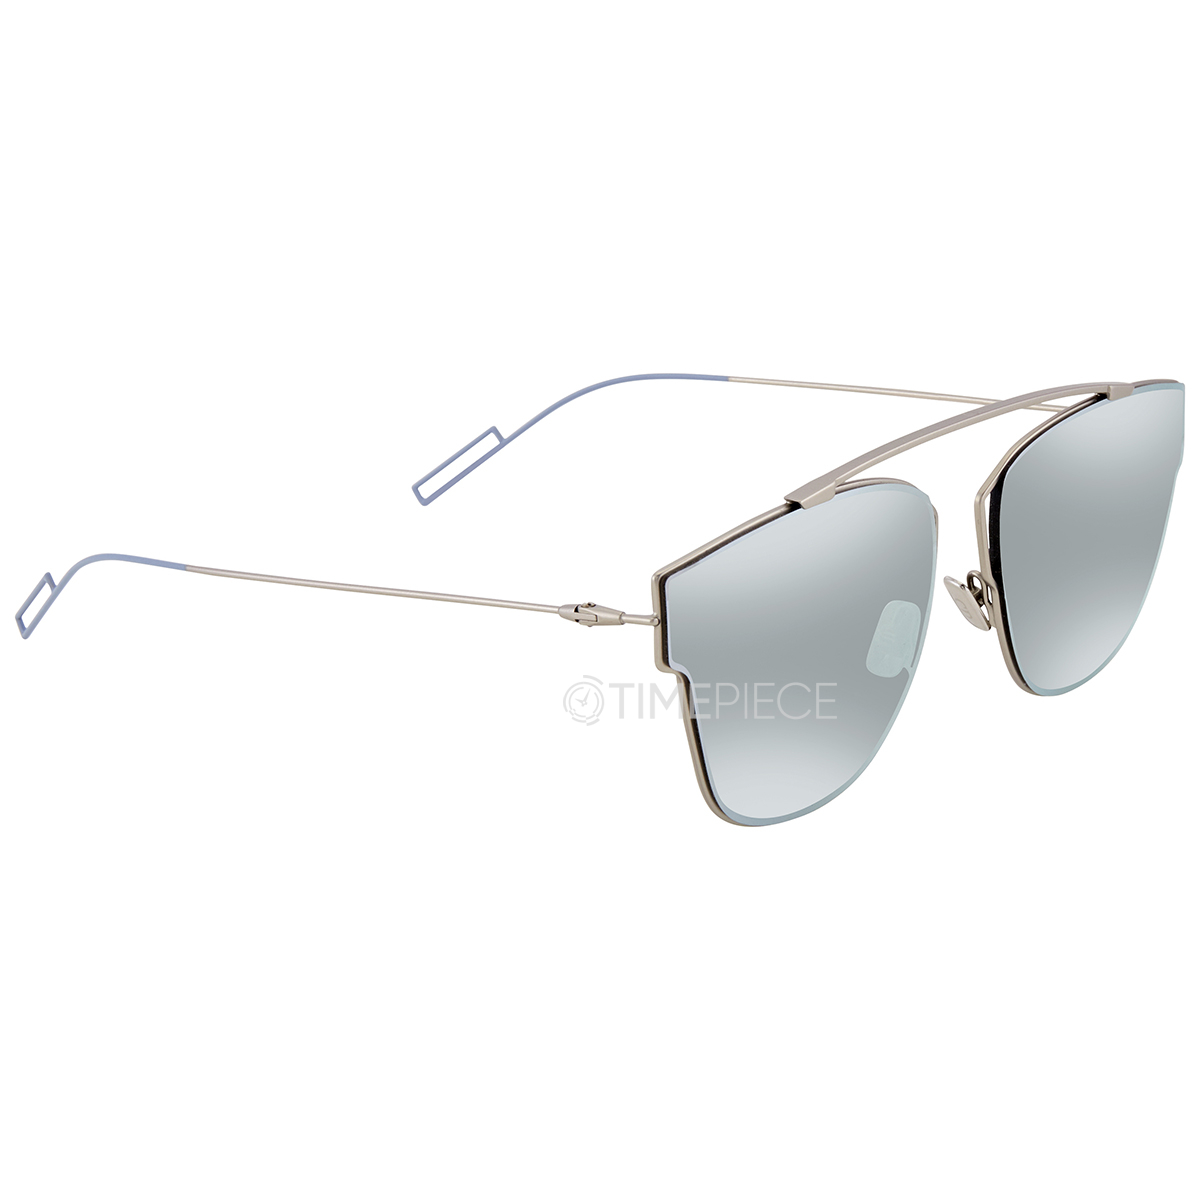 Dior Silver Mirror Square Sunglasses DIOR0204FS 0011 61